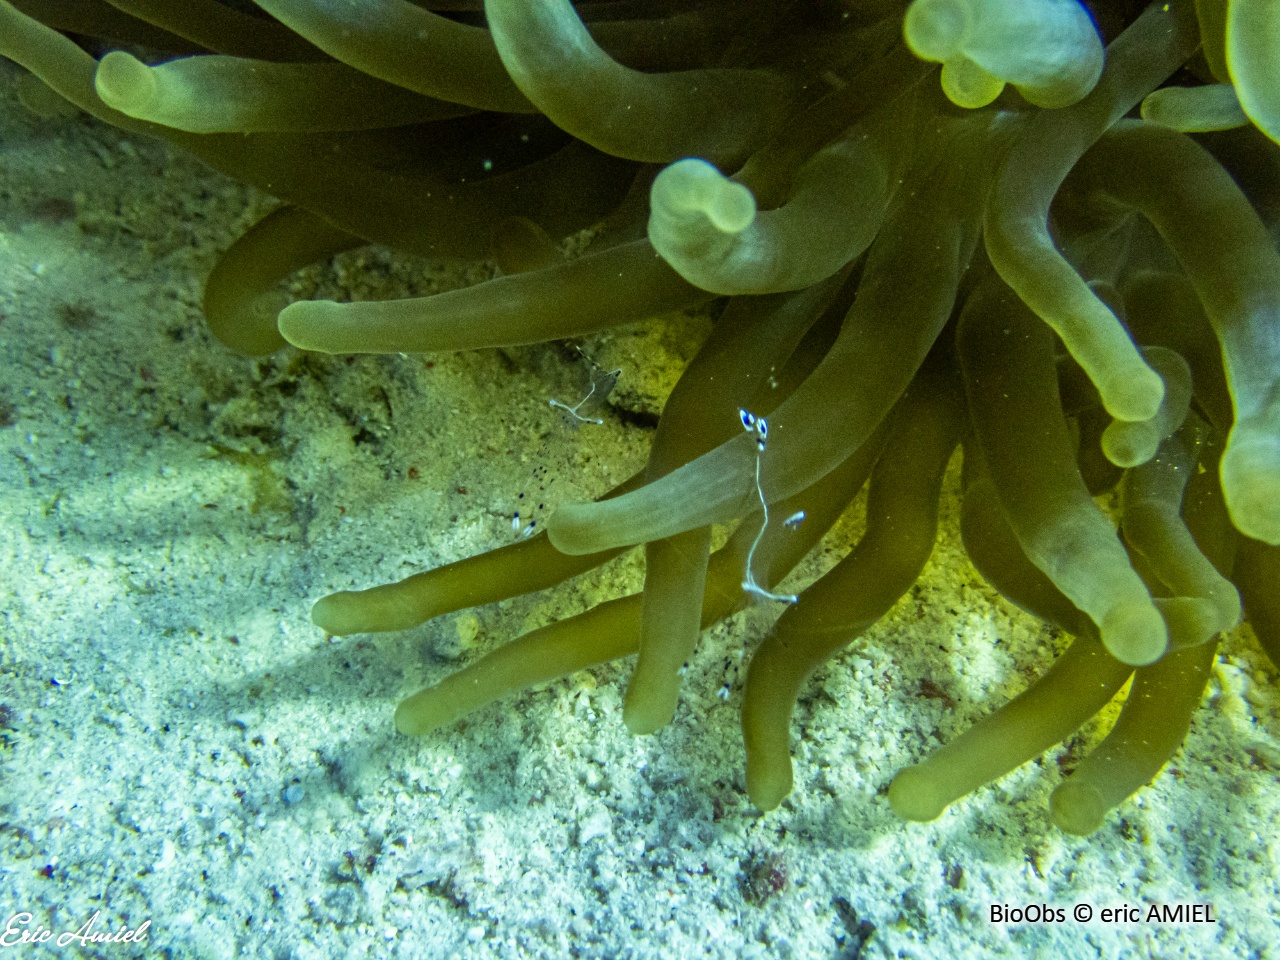 Crevette des anémones à longs bras - Ancylomenes longicarpus - eric AMIEL - BioObs